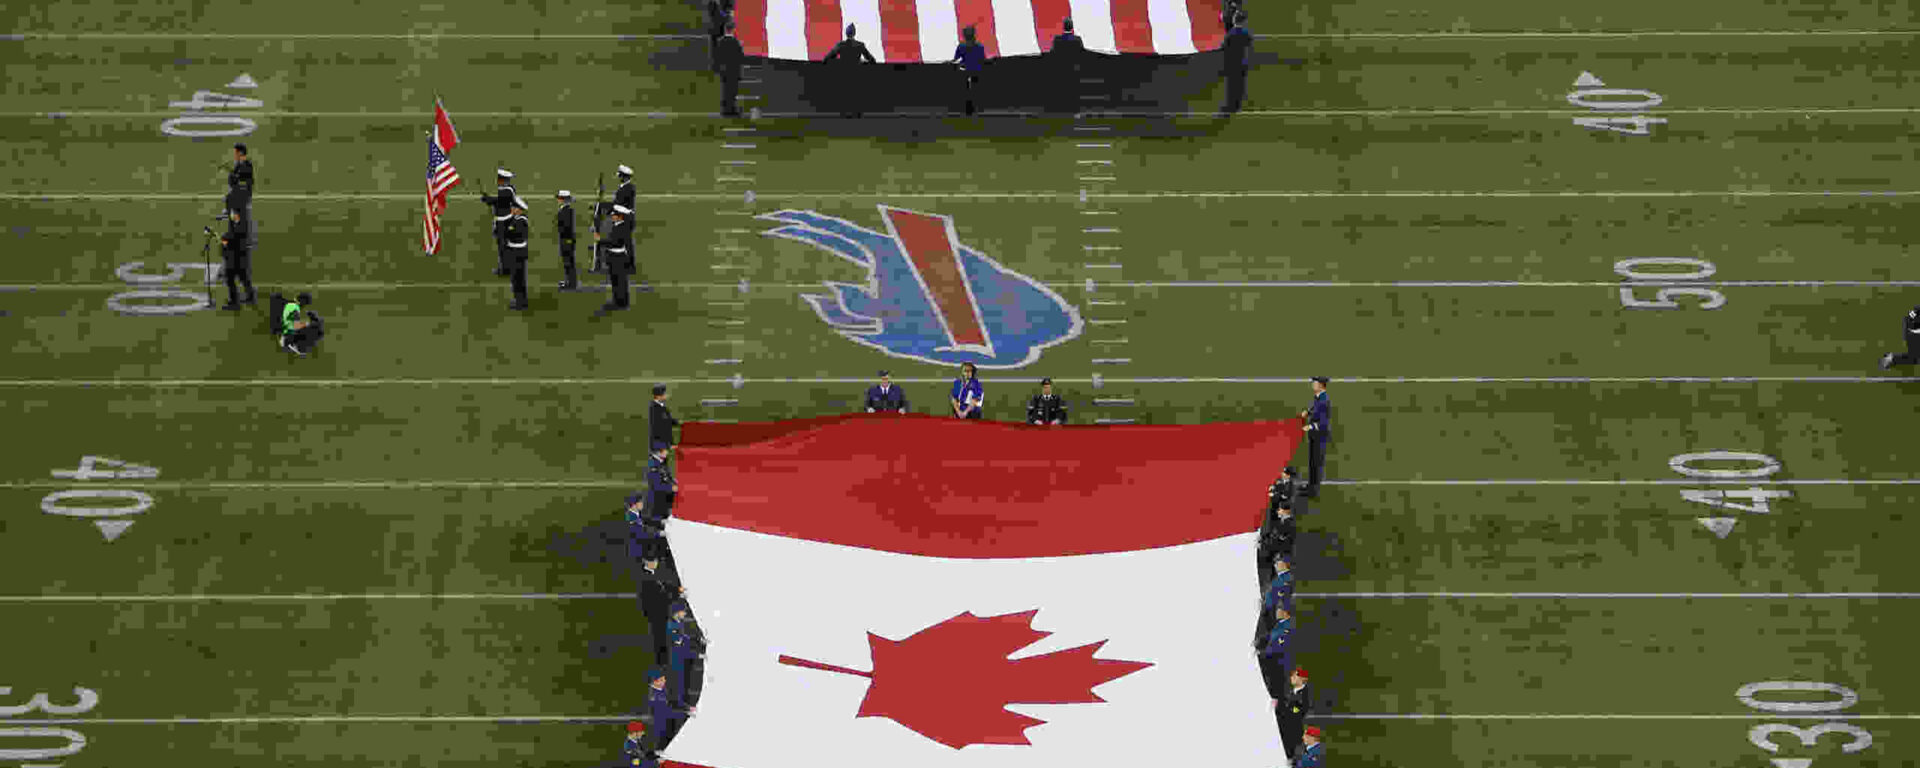 ამერიკისა და კანადის დროშები აფრინდა NFL თამაშის დროს